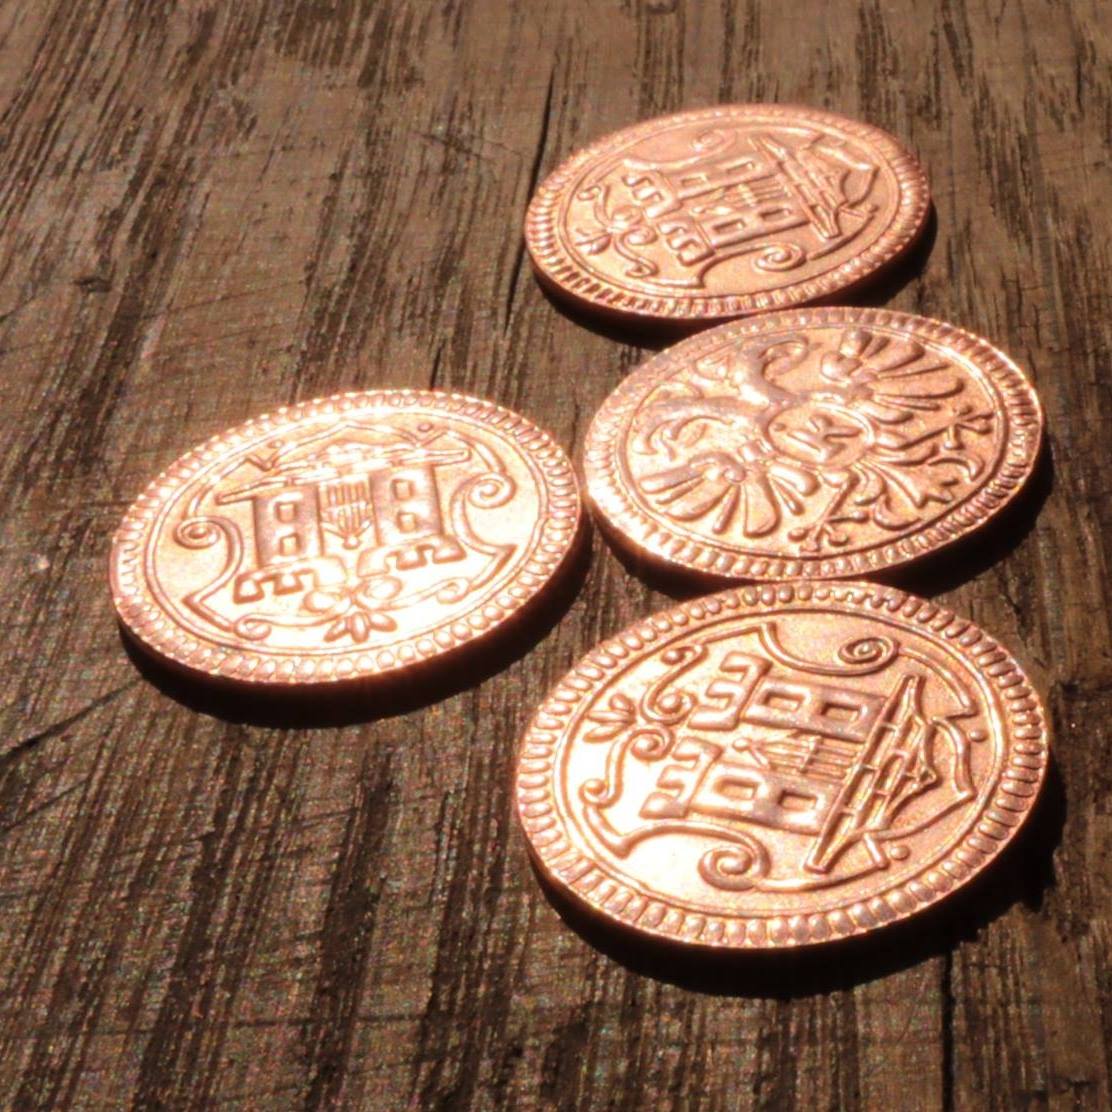 MvR - Münzen auf dem Holztisch_JoE